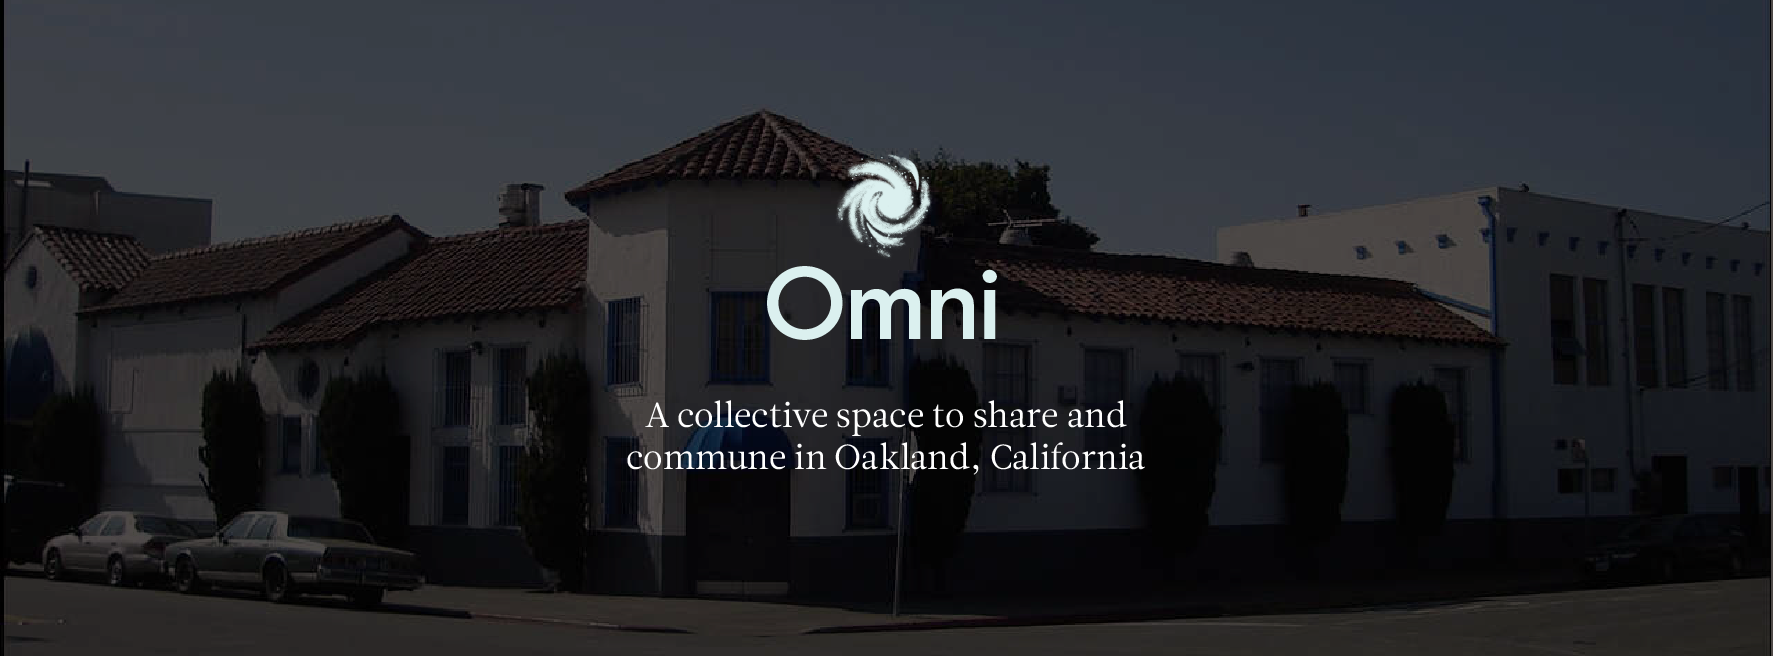 Omni Commons